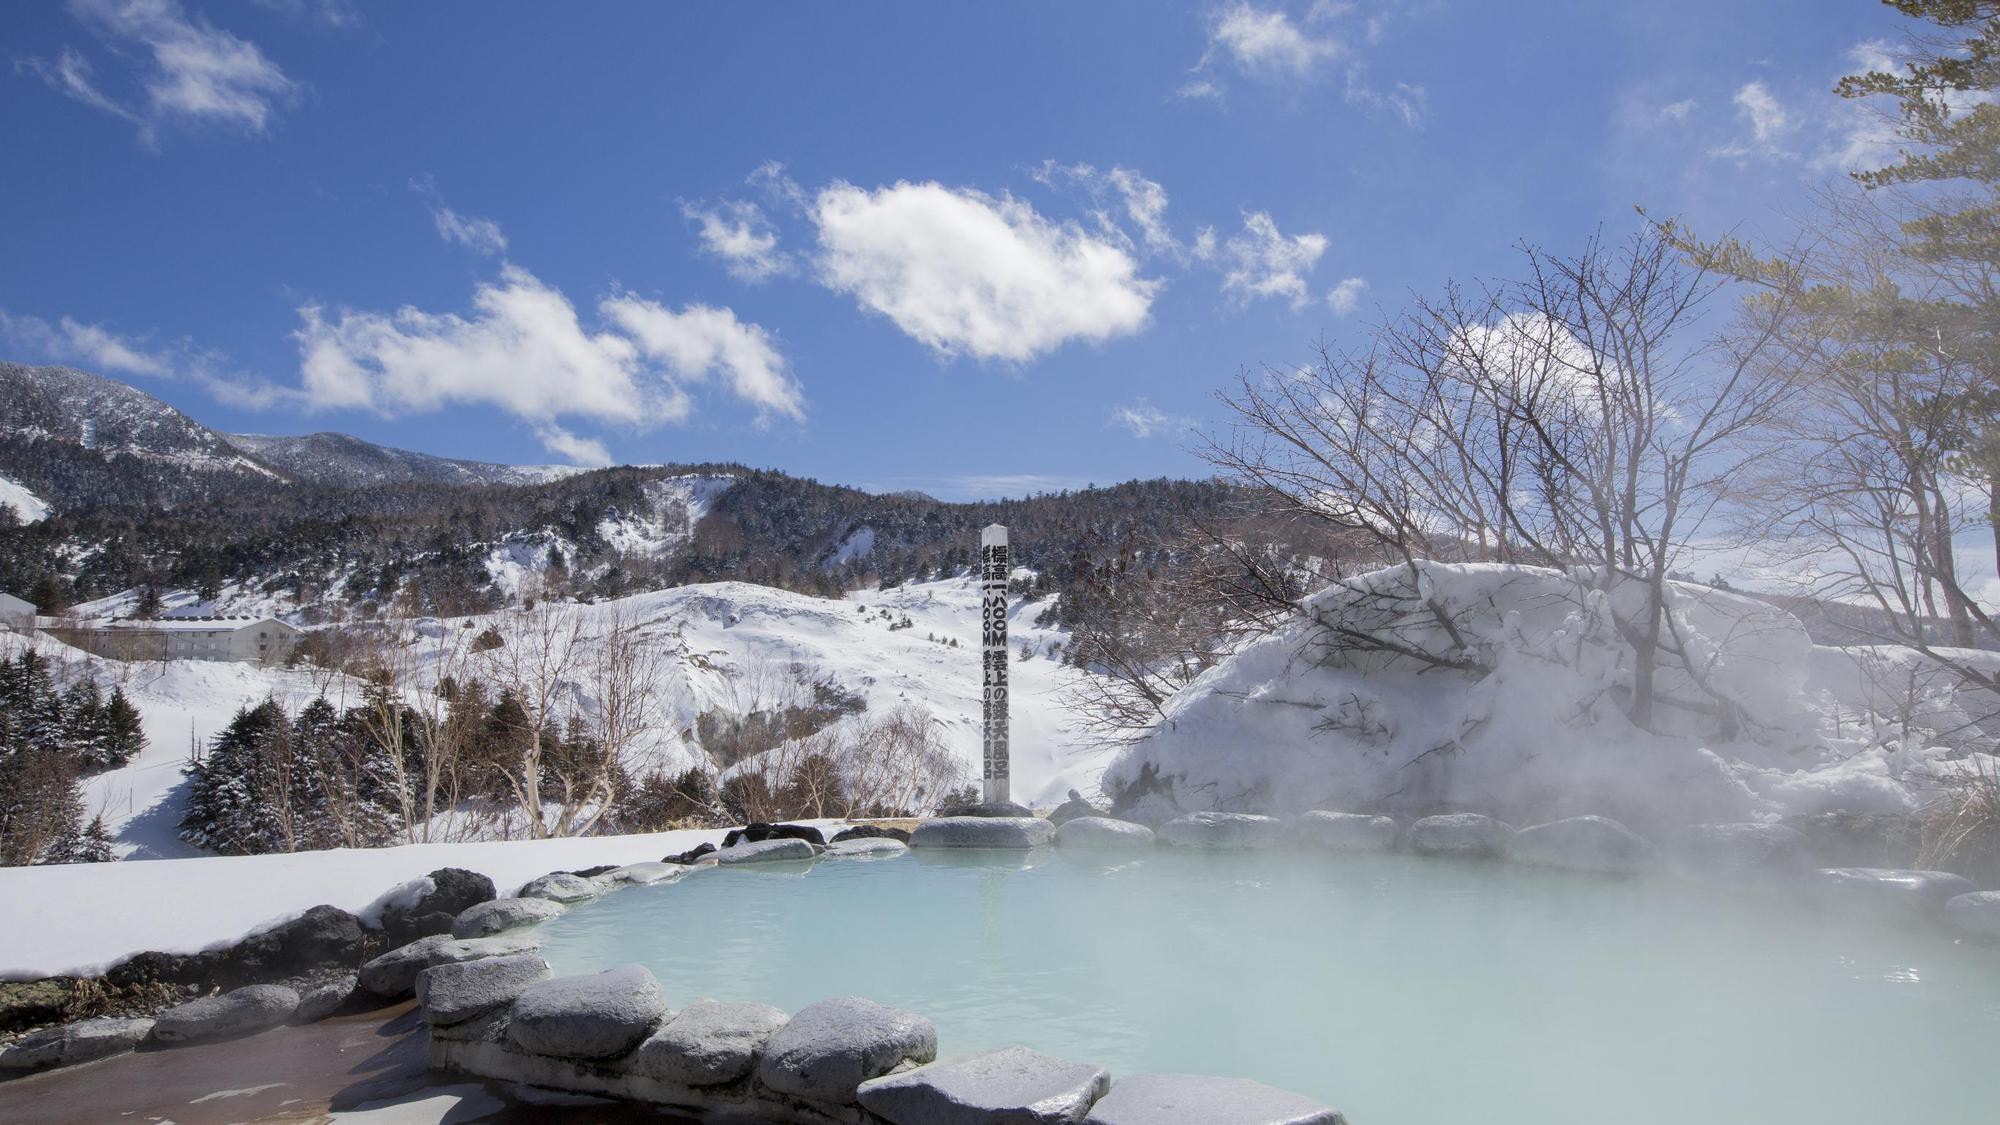 【코마쿠사노유】12월부터 4월에 걸쳐 유키미 목욕을 즐길 수 있습니다